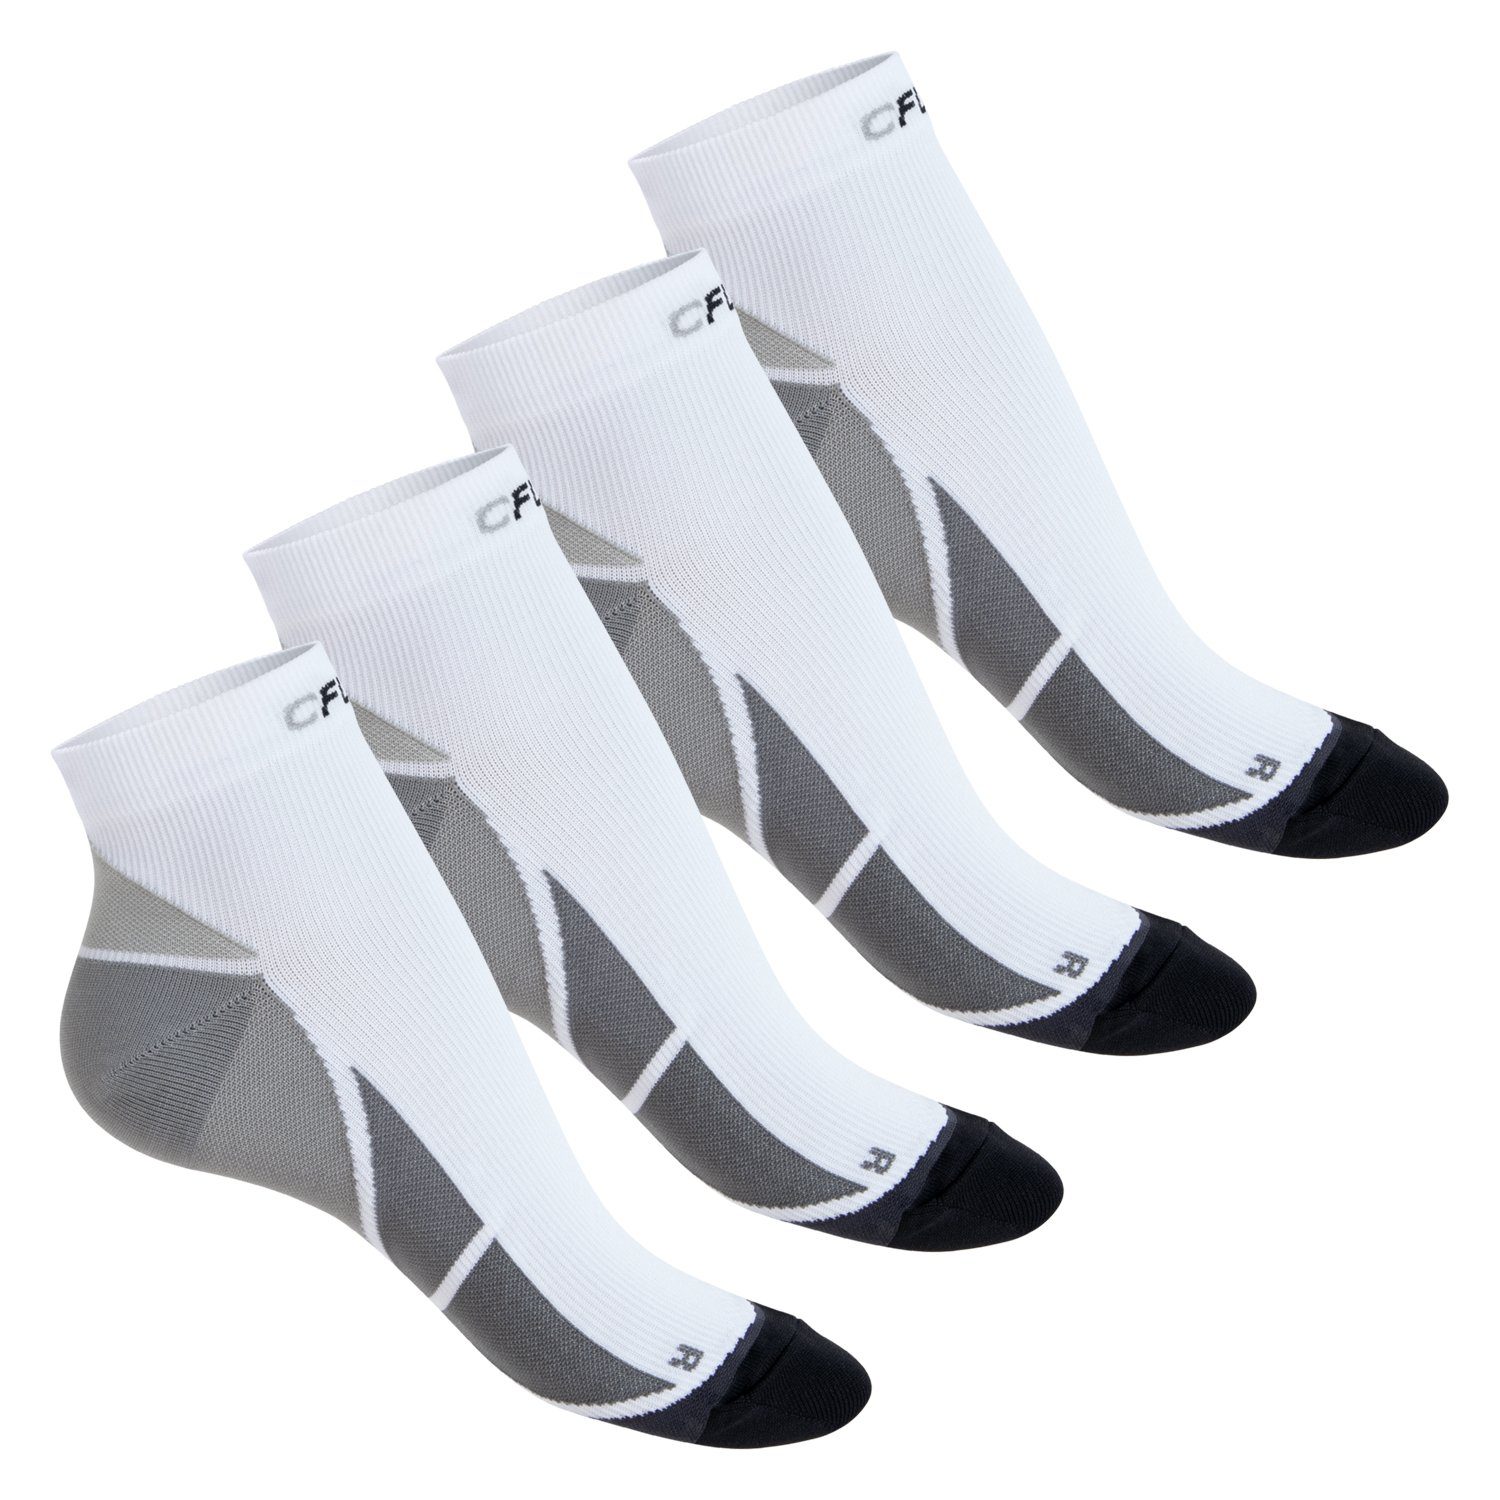 CFLEX Kompressionsstrümpfe Sport Socken für Herren & Damen (2/4 Paar) mit Kompression 4x Weiß / Grau